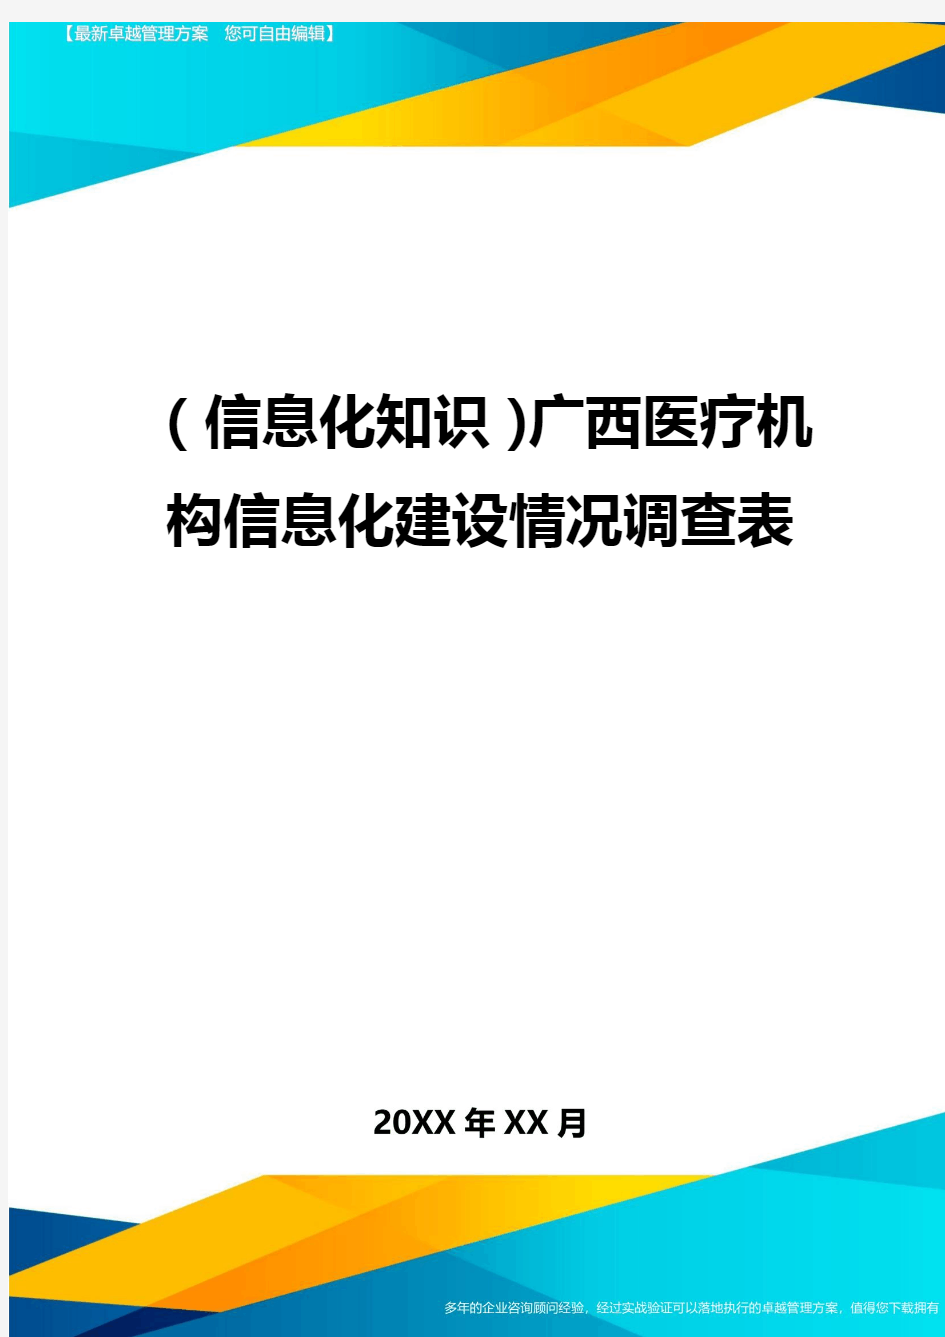 {信息化知识}广西医疗机构信息化建设情况调查表